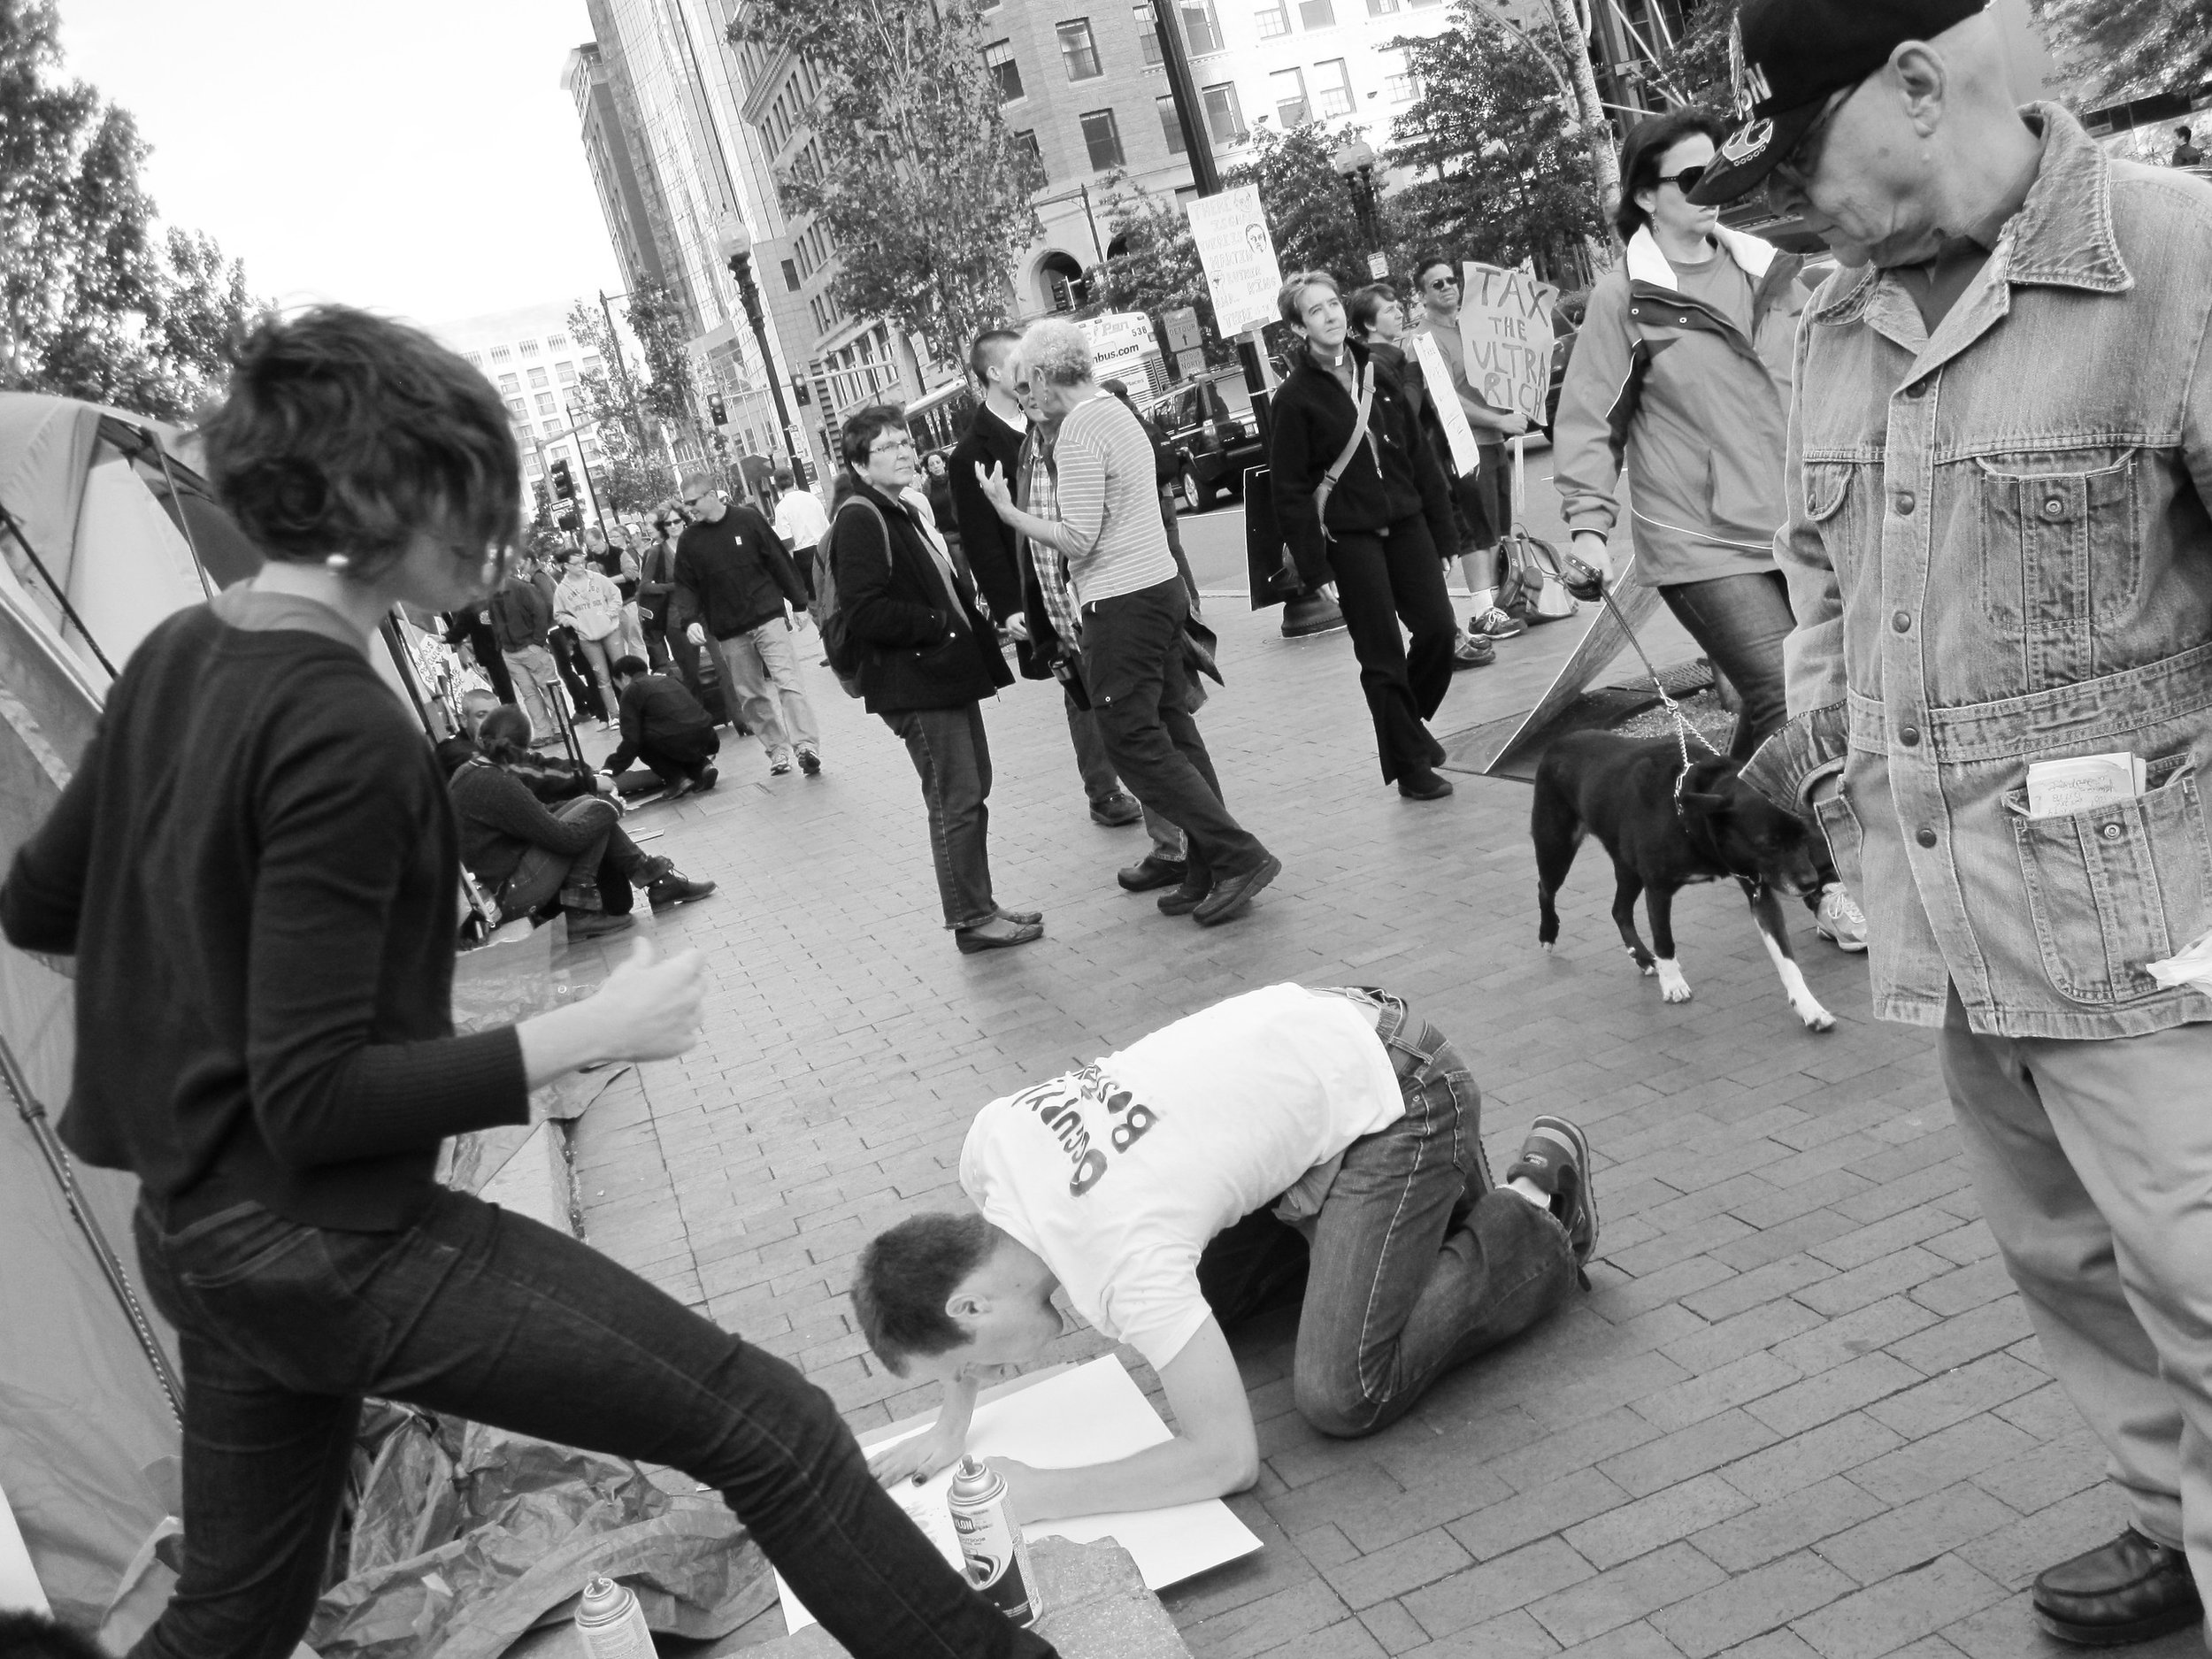 Occupy Boston, Dewey Square, October 16, 2011.